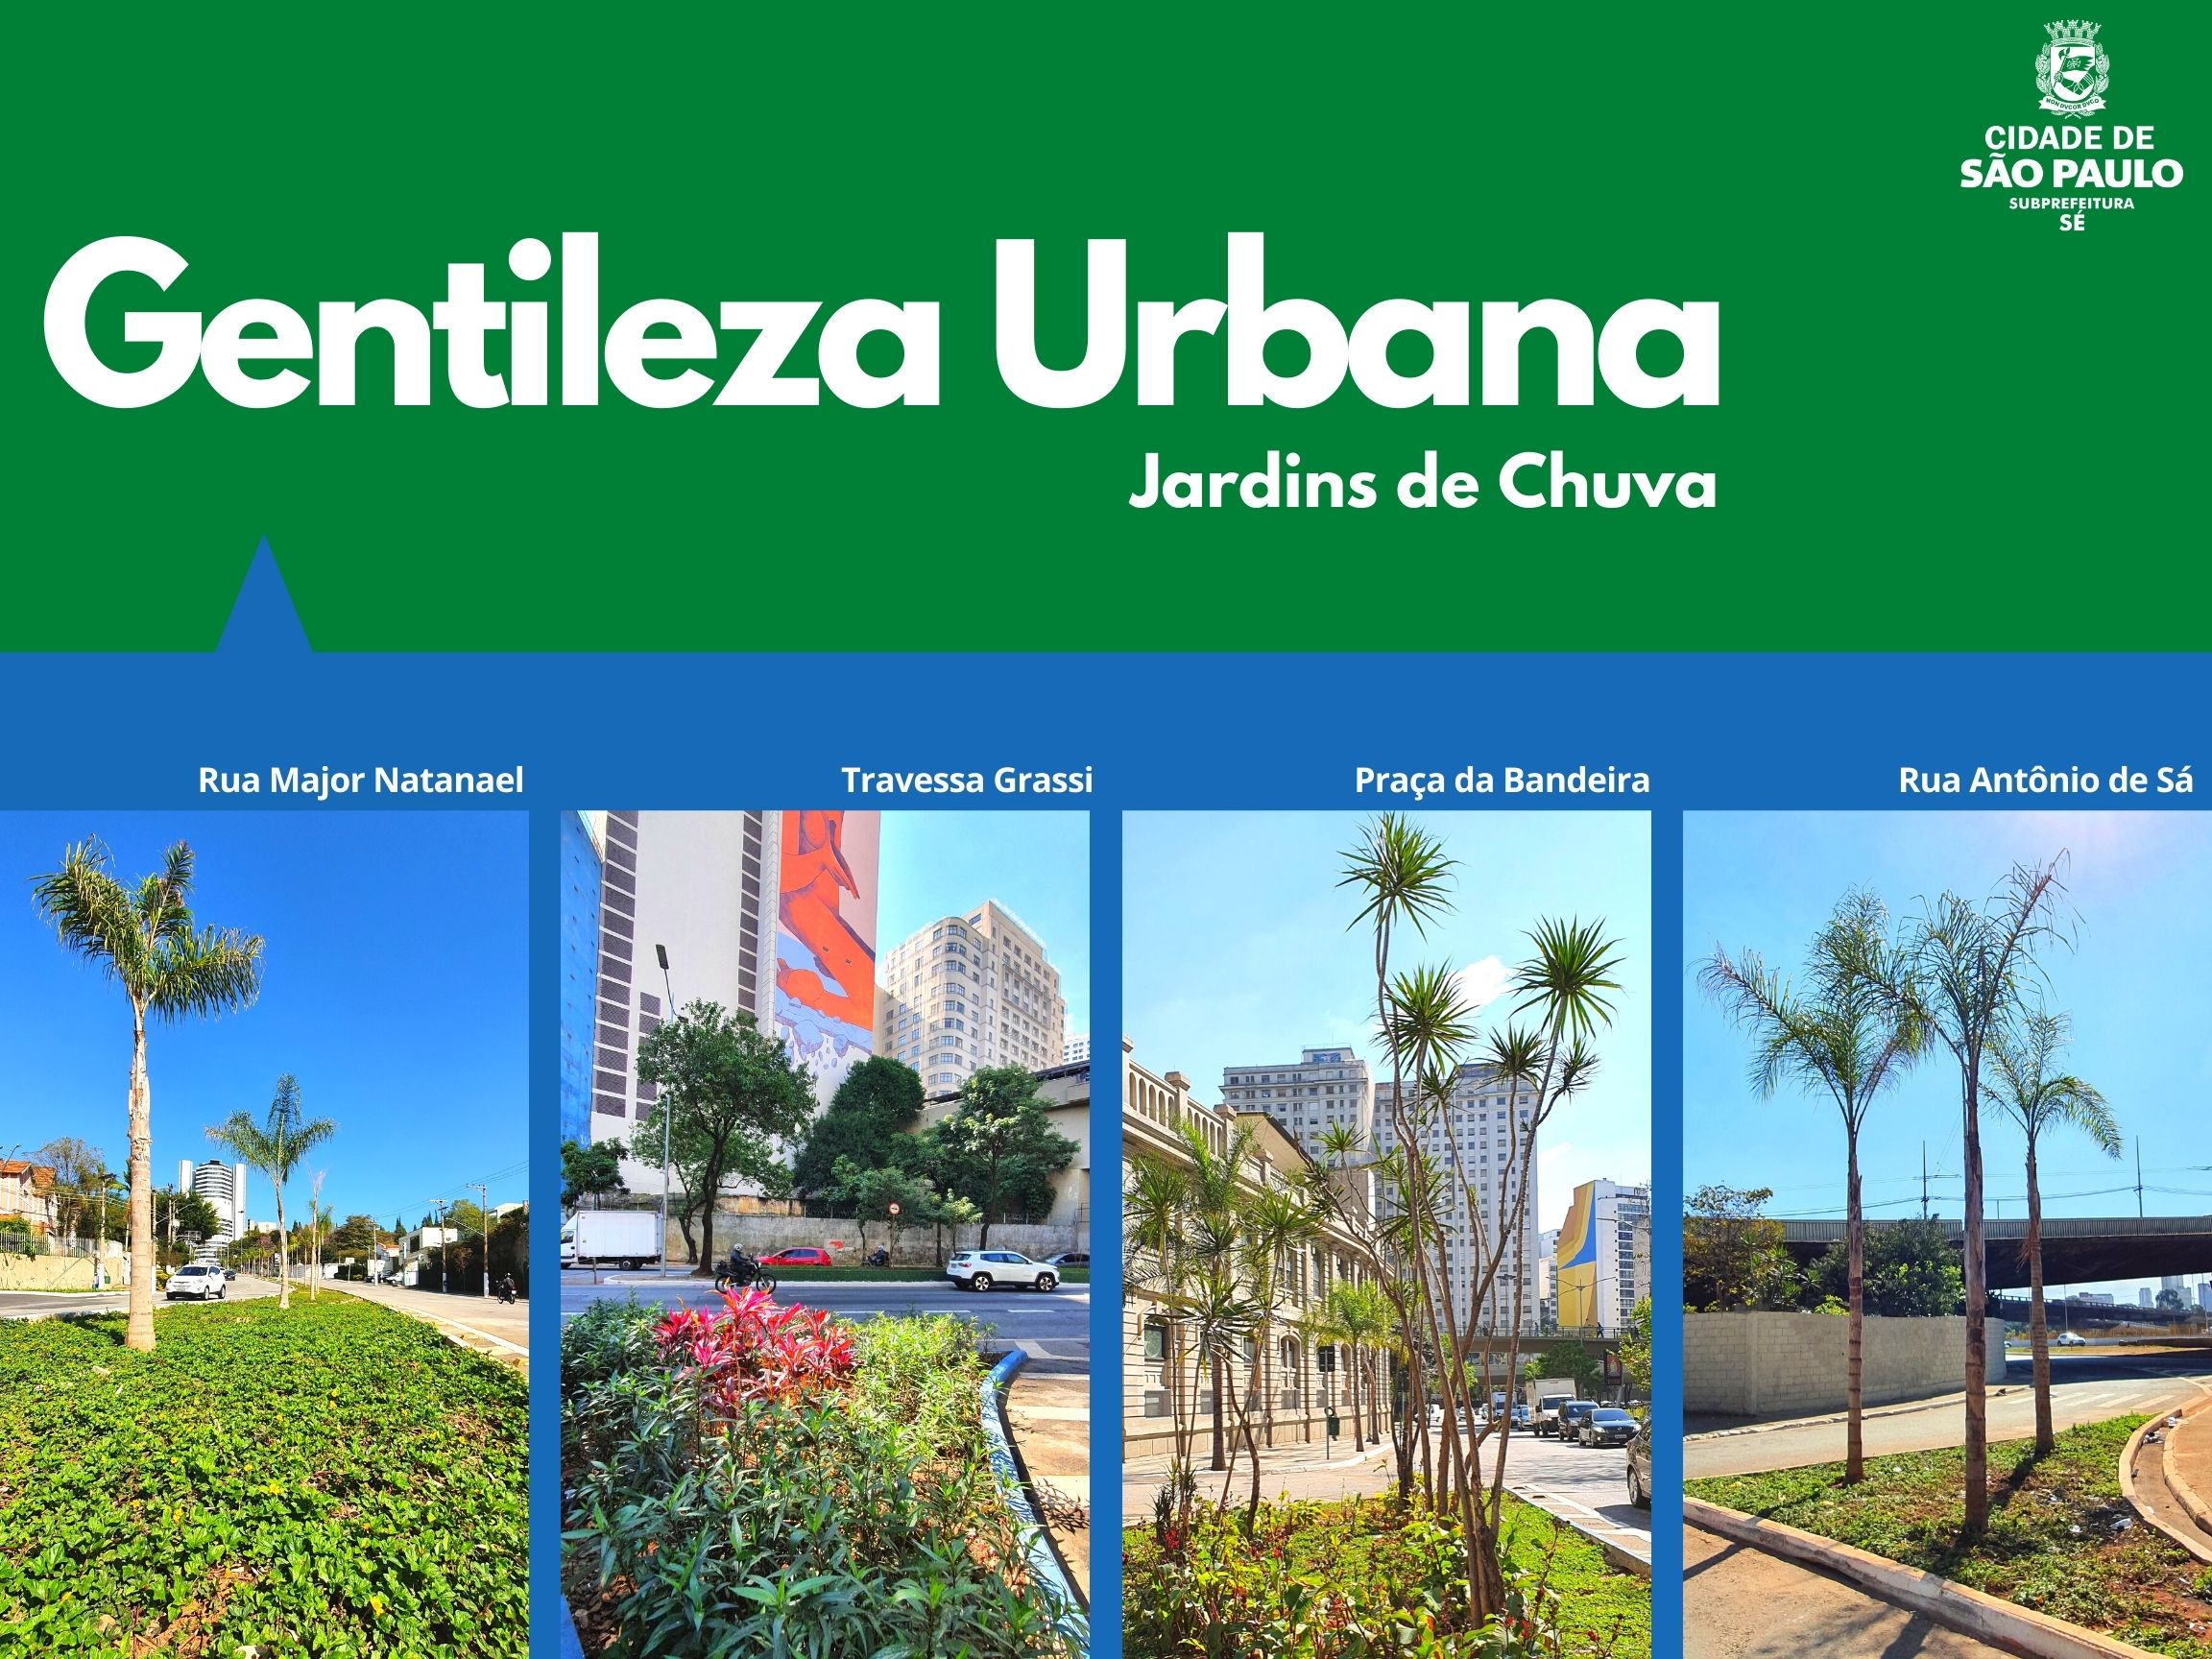 Arte escrito Gentileza Urbana com o logotipo da subprefeitura Sé mostra quatro jardins de chuva